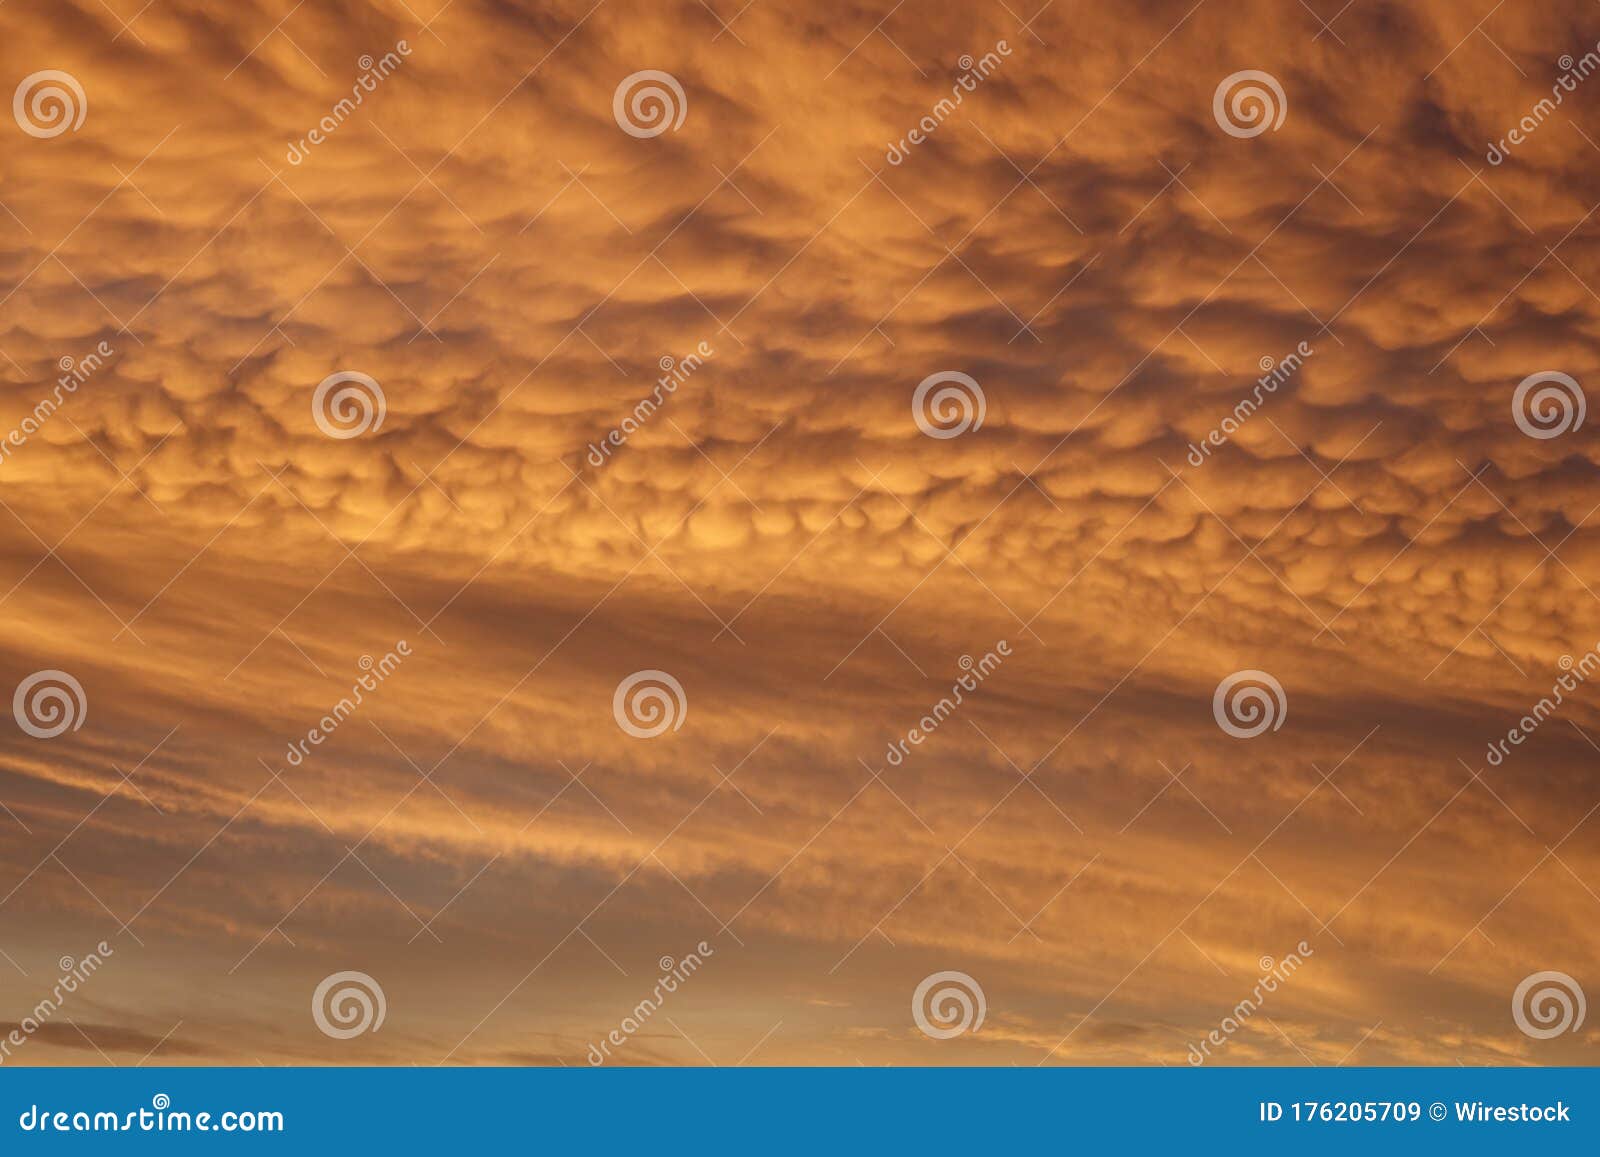 清澈的云彩和日落的天空 非常适合贴壁纸库存图片 图片包括有beautifuler 176205709